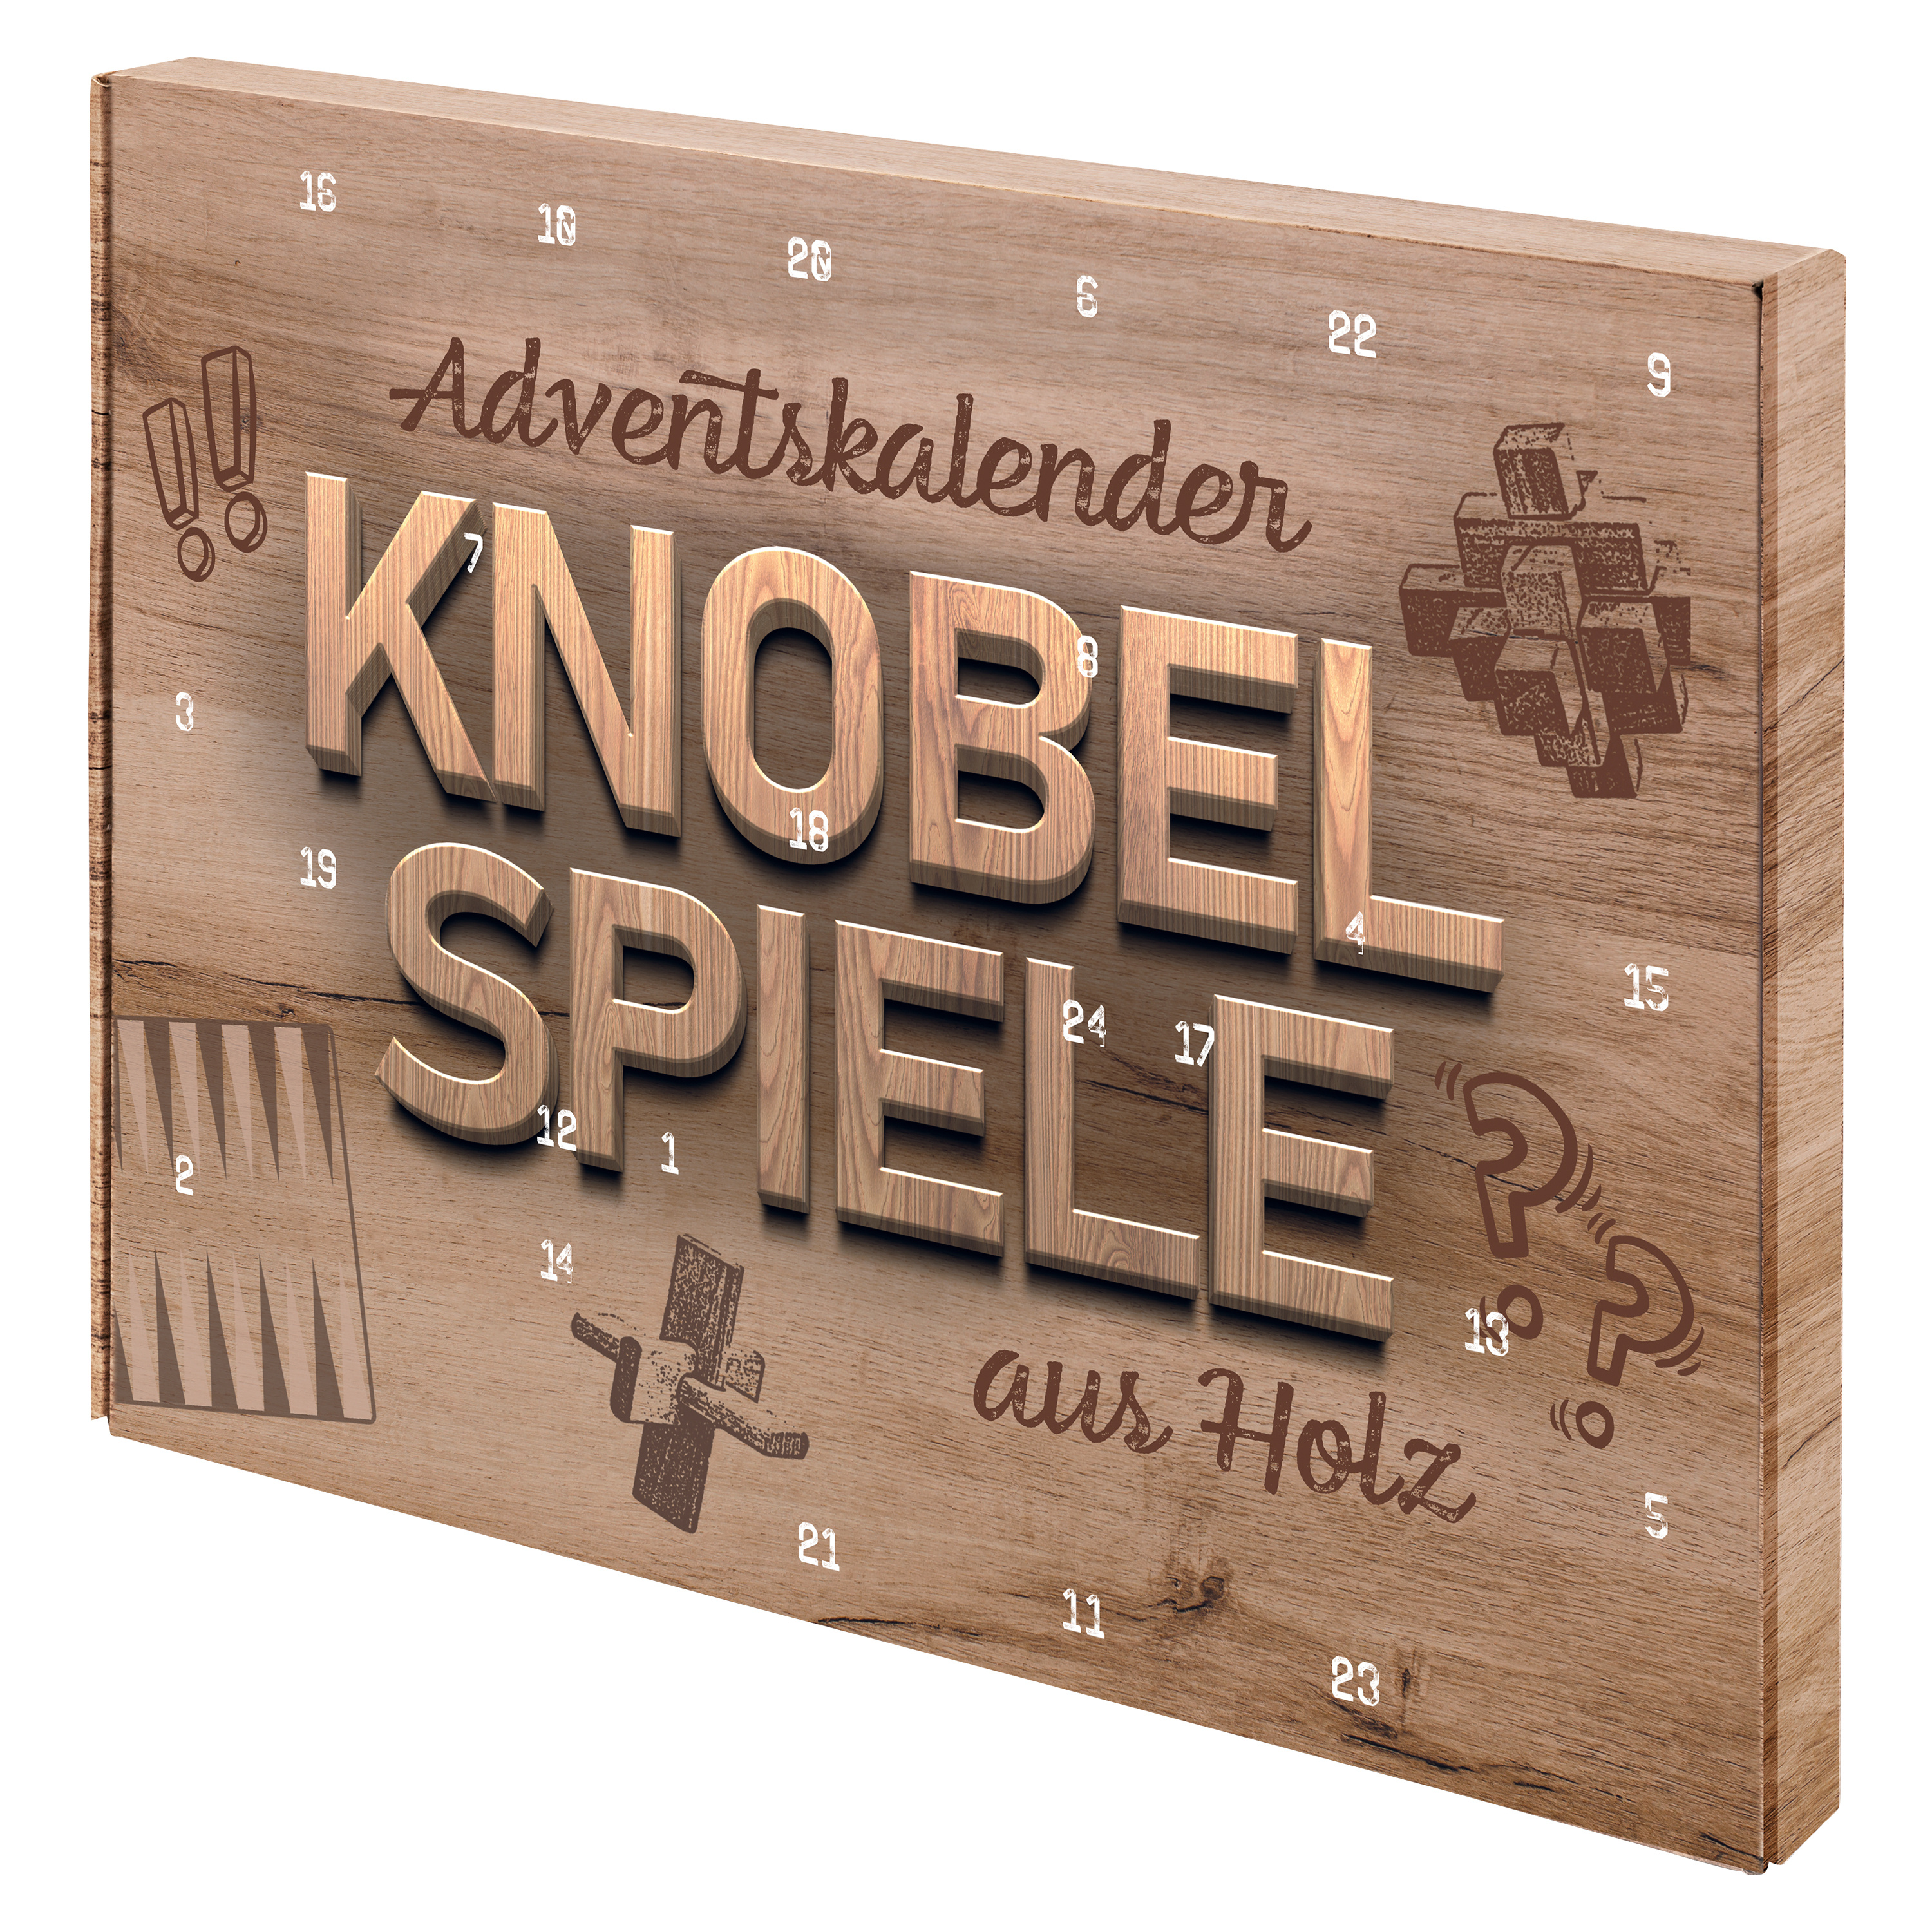 Adventskalender Knobelspiele Holz - Kalender bei Weltbild.de